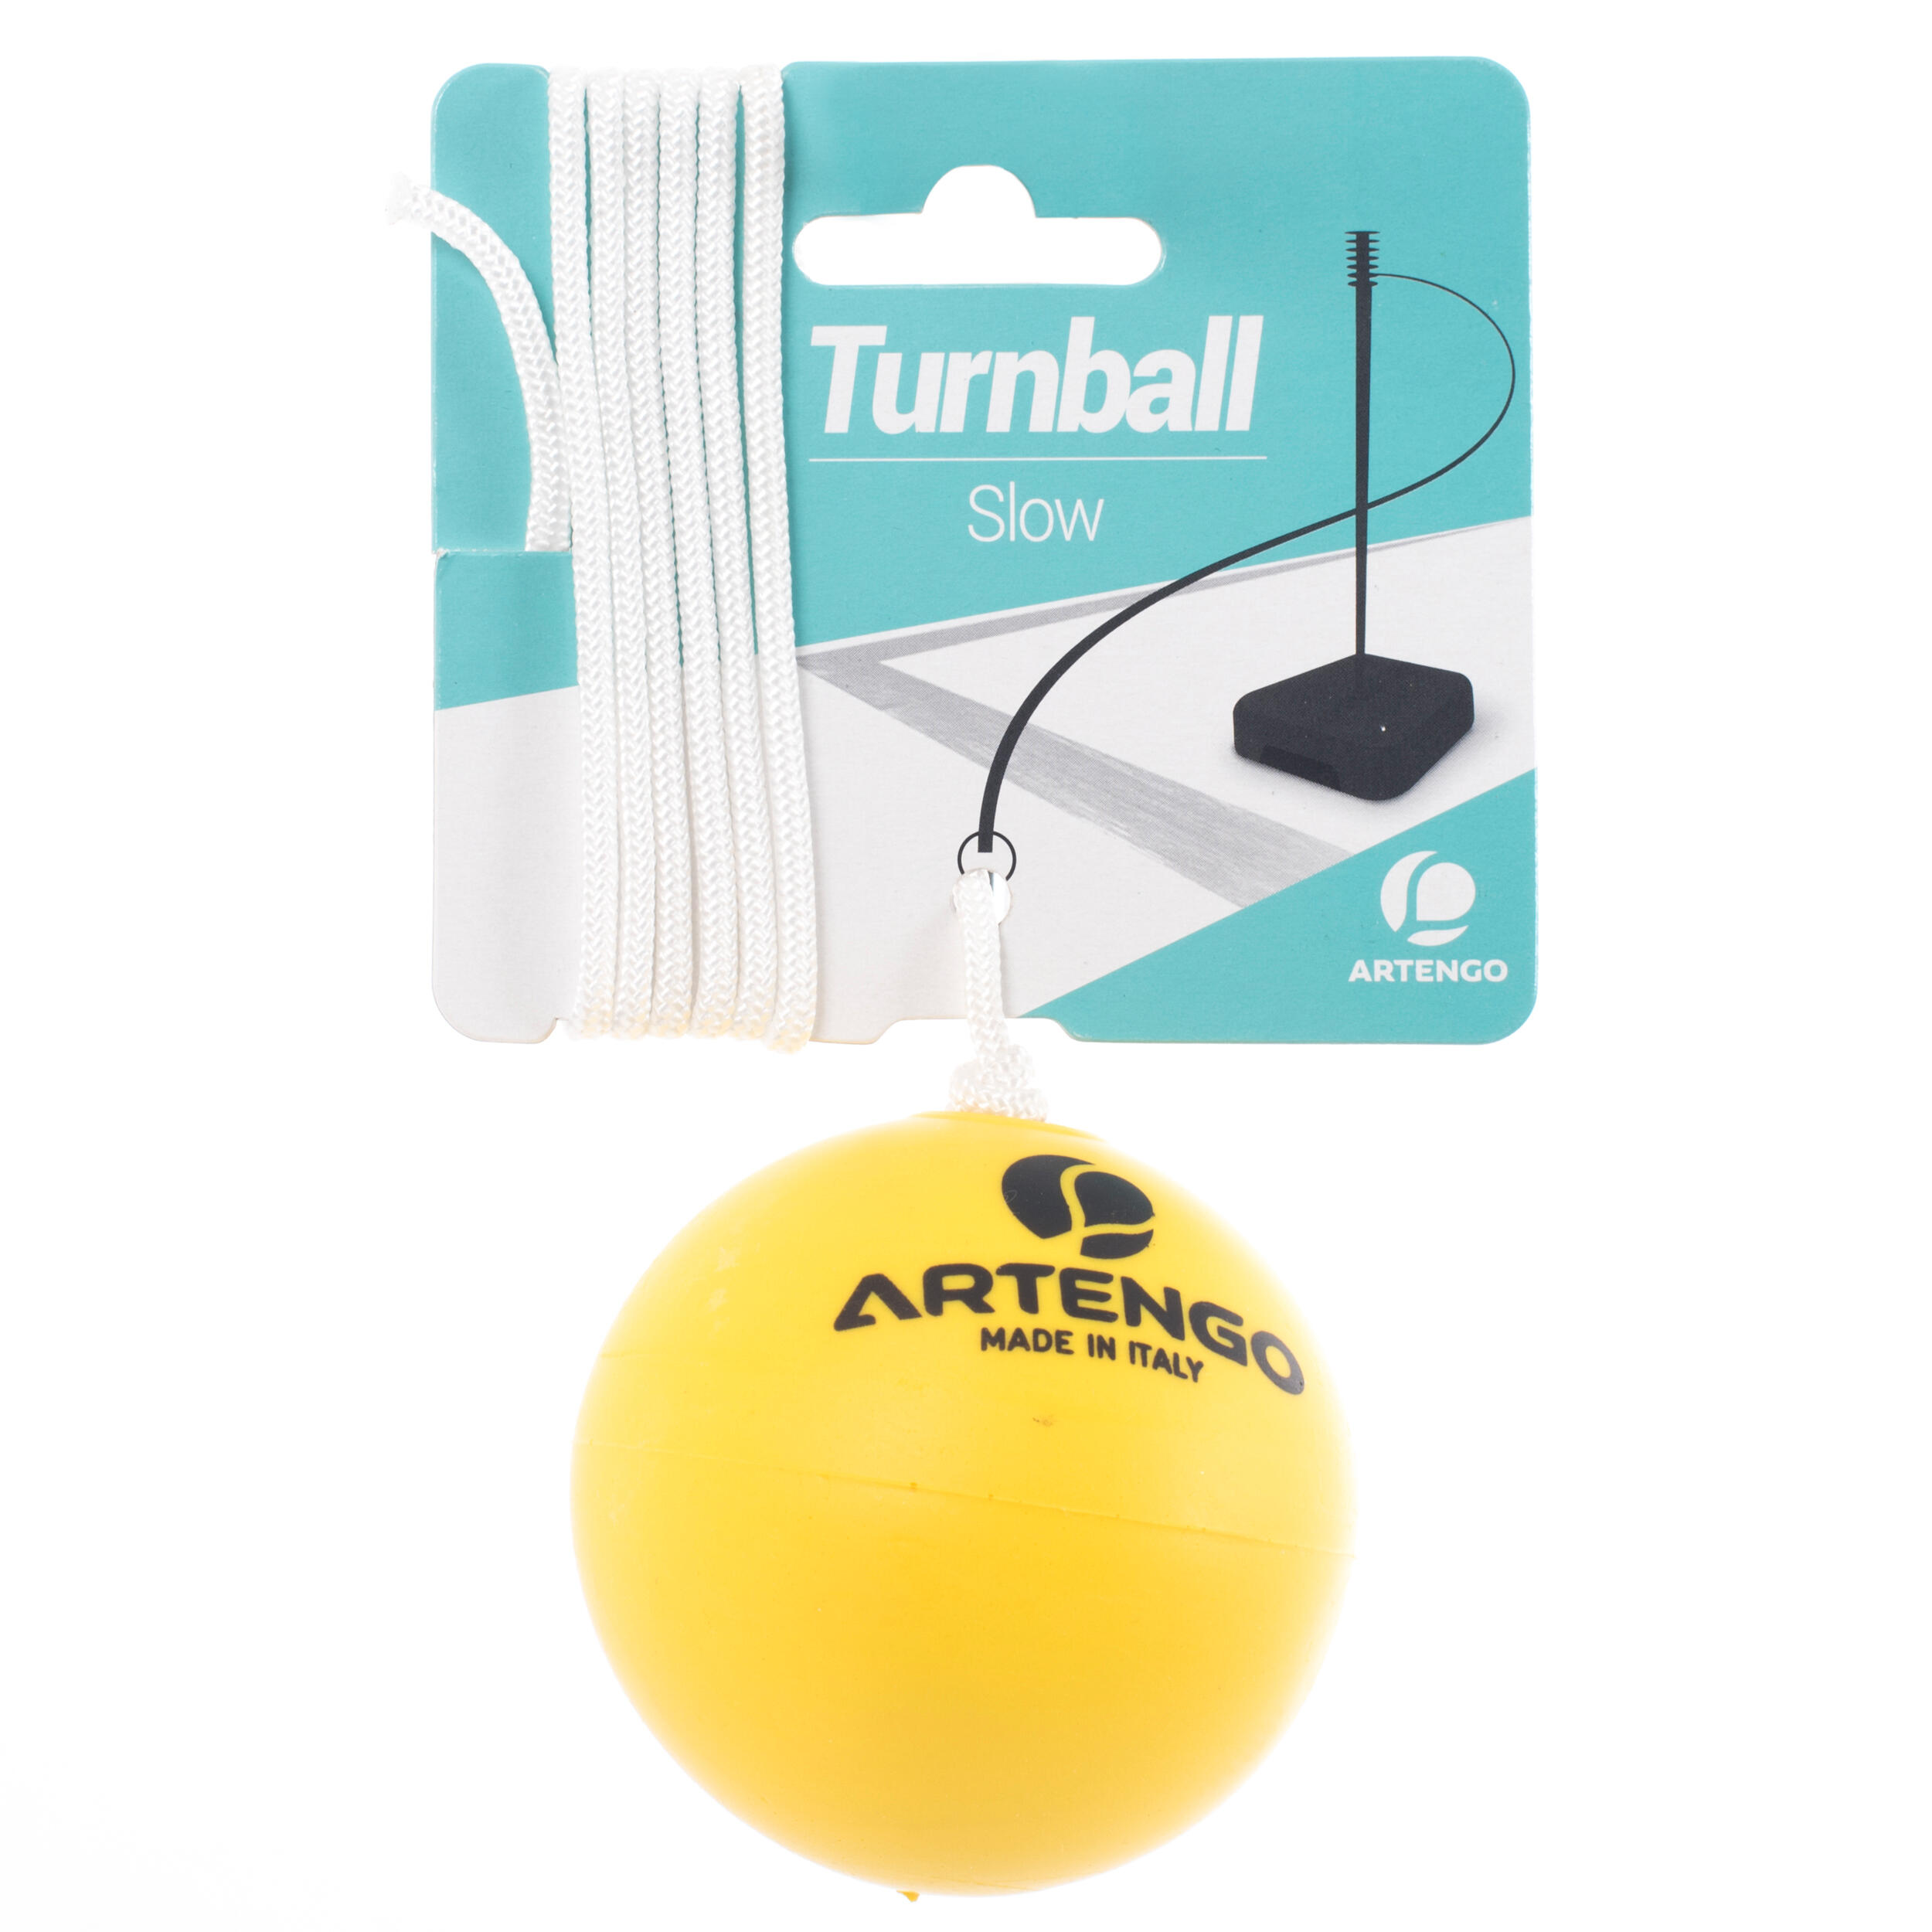 turnball speedball